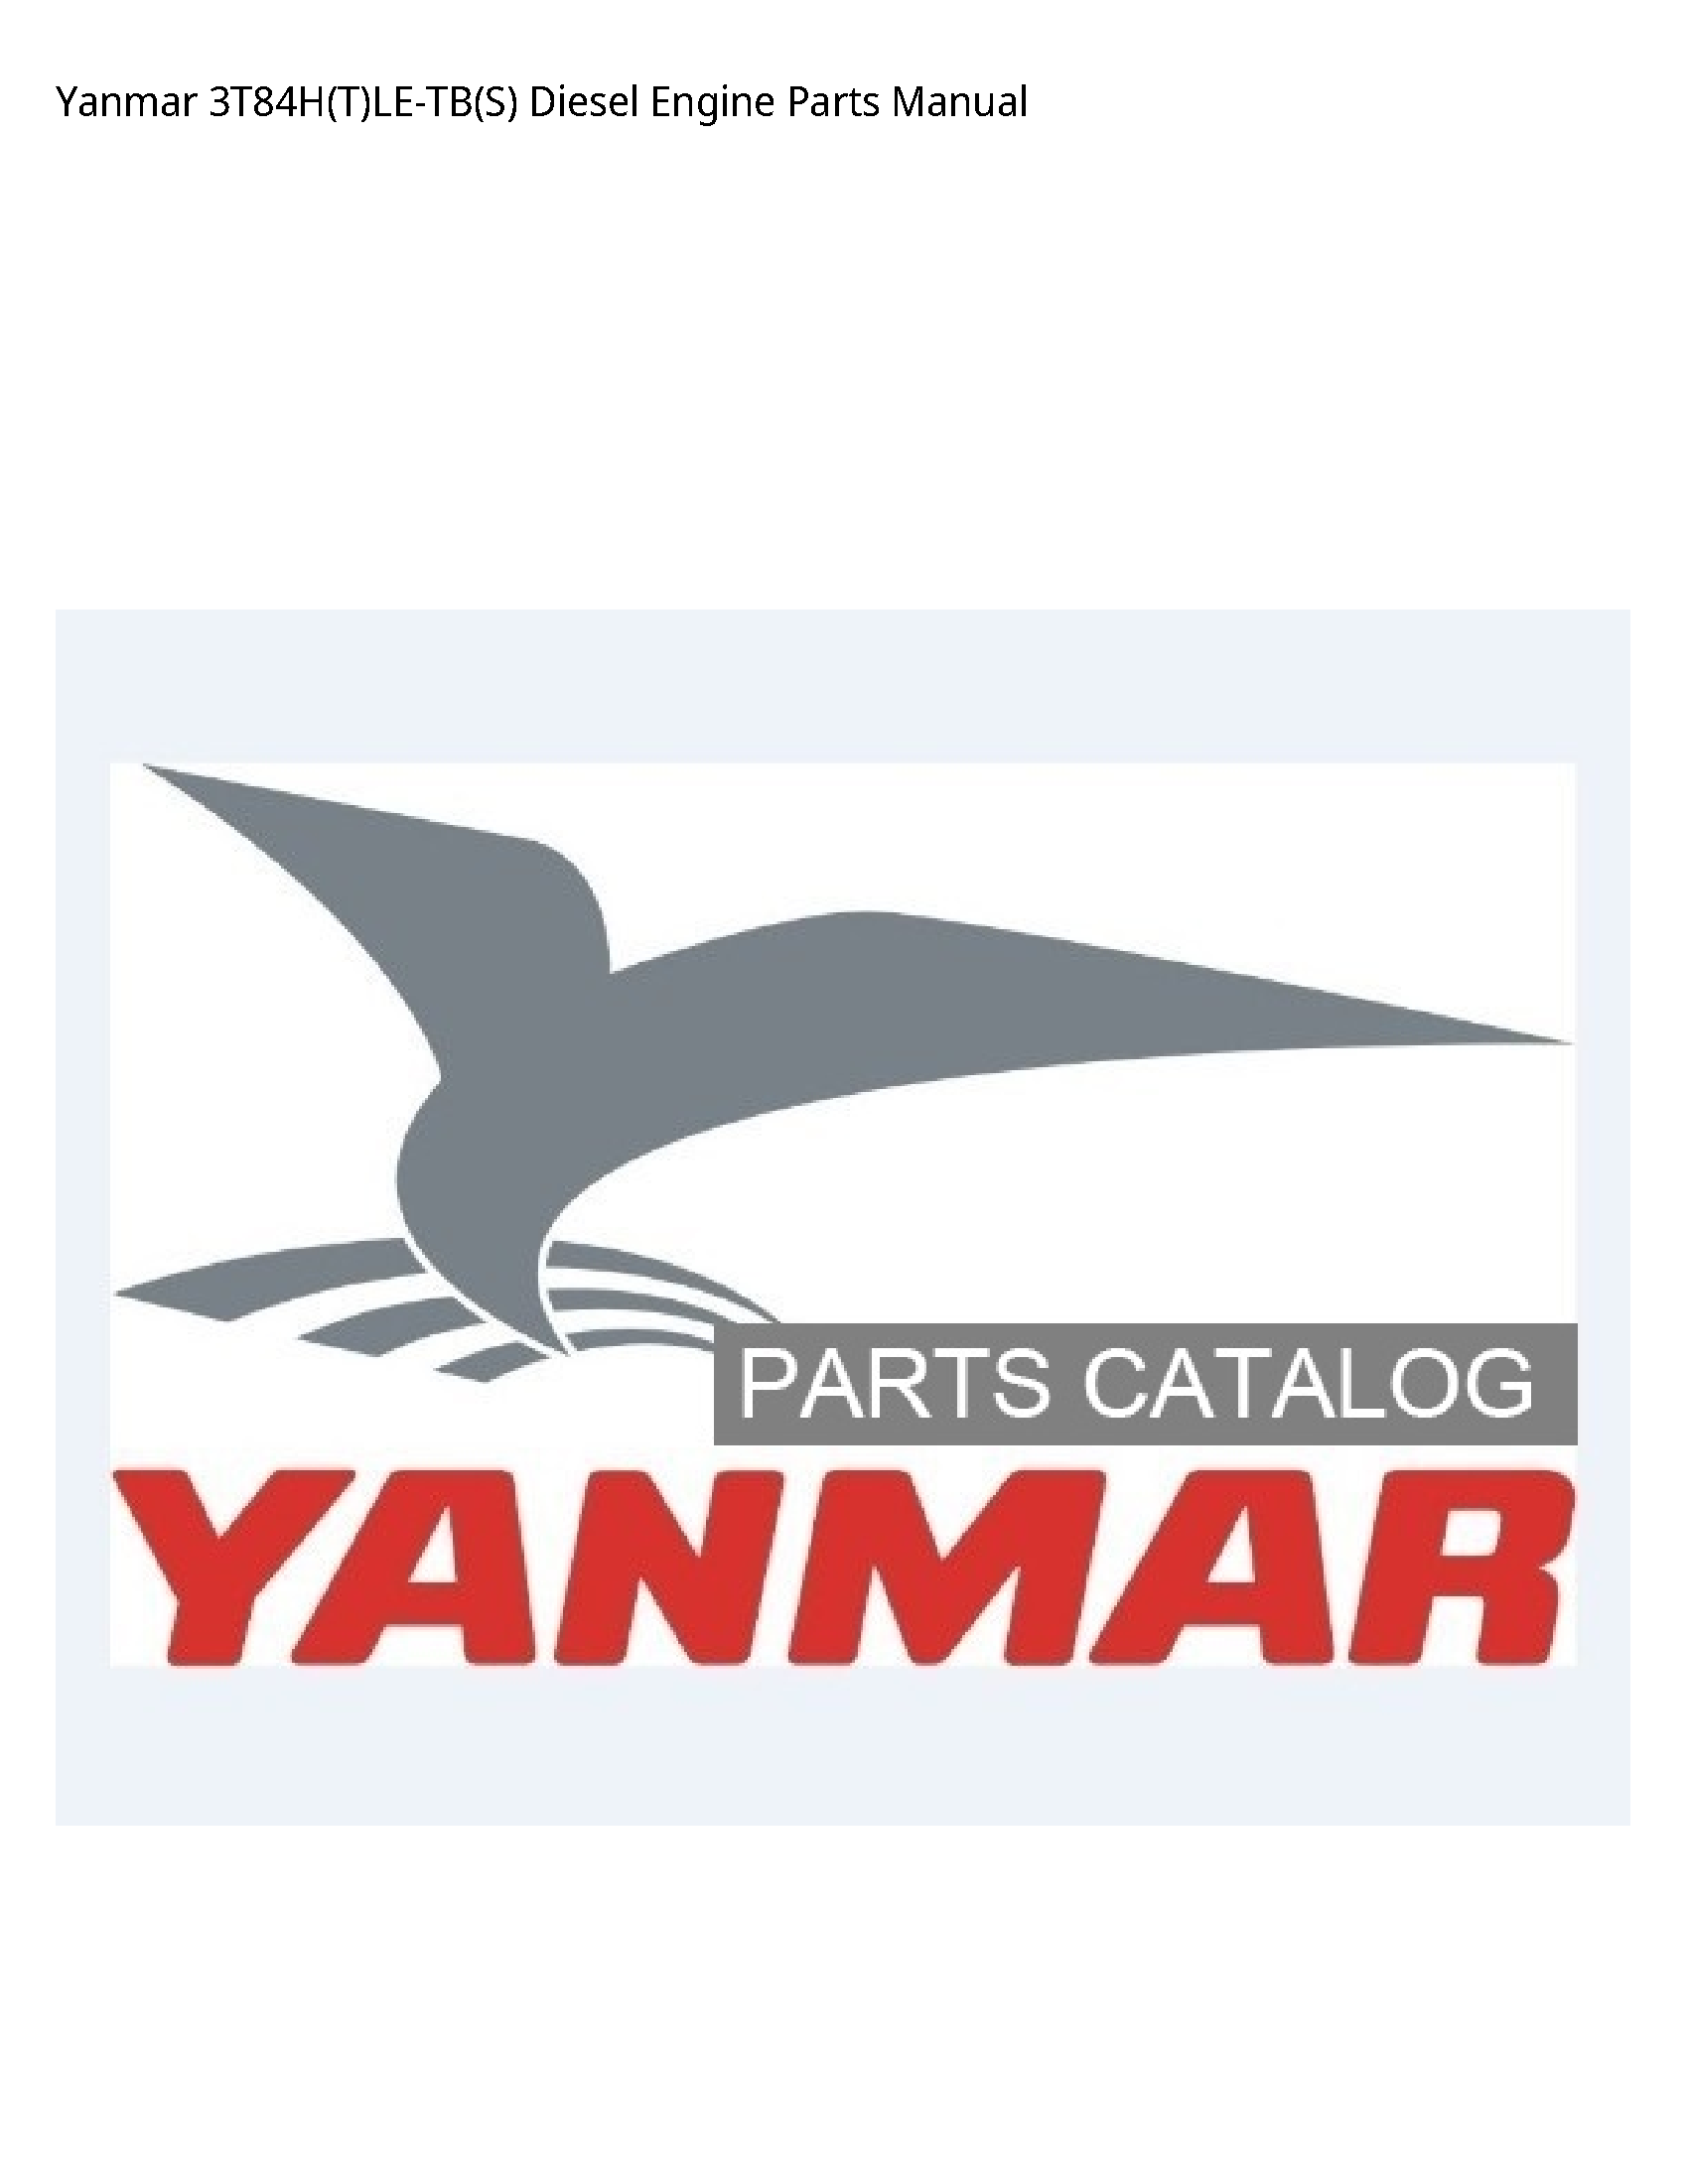 Yanmar 3T84H(T)LE-TB(S) Diesel Engine Parts manual